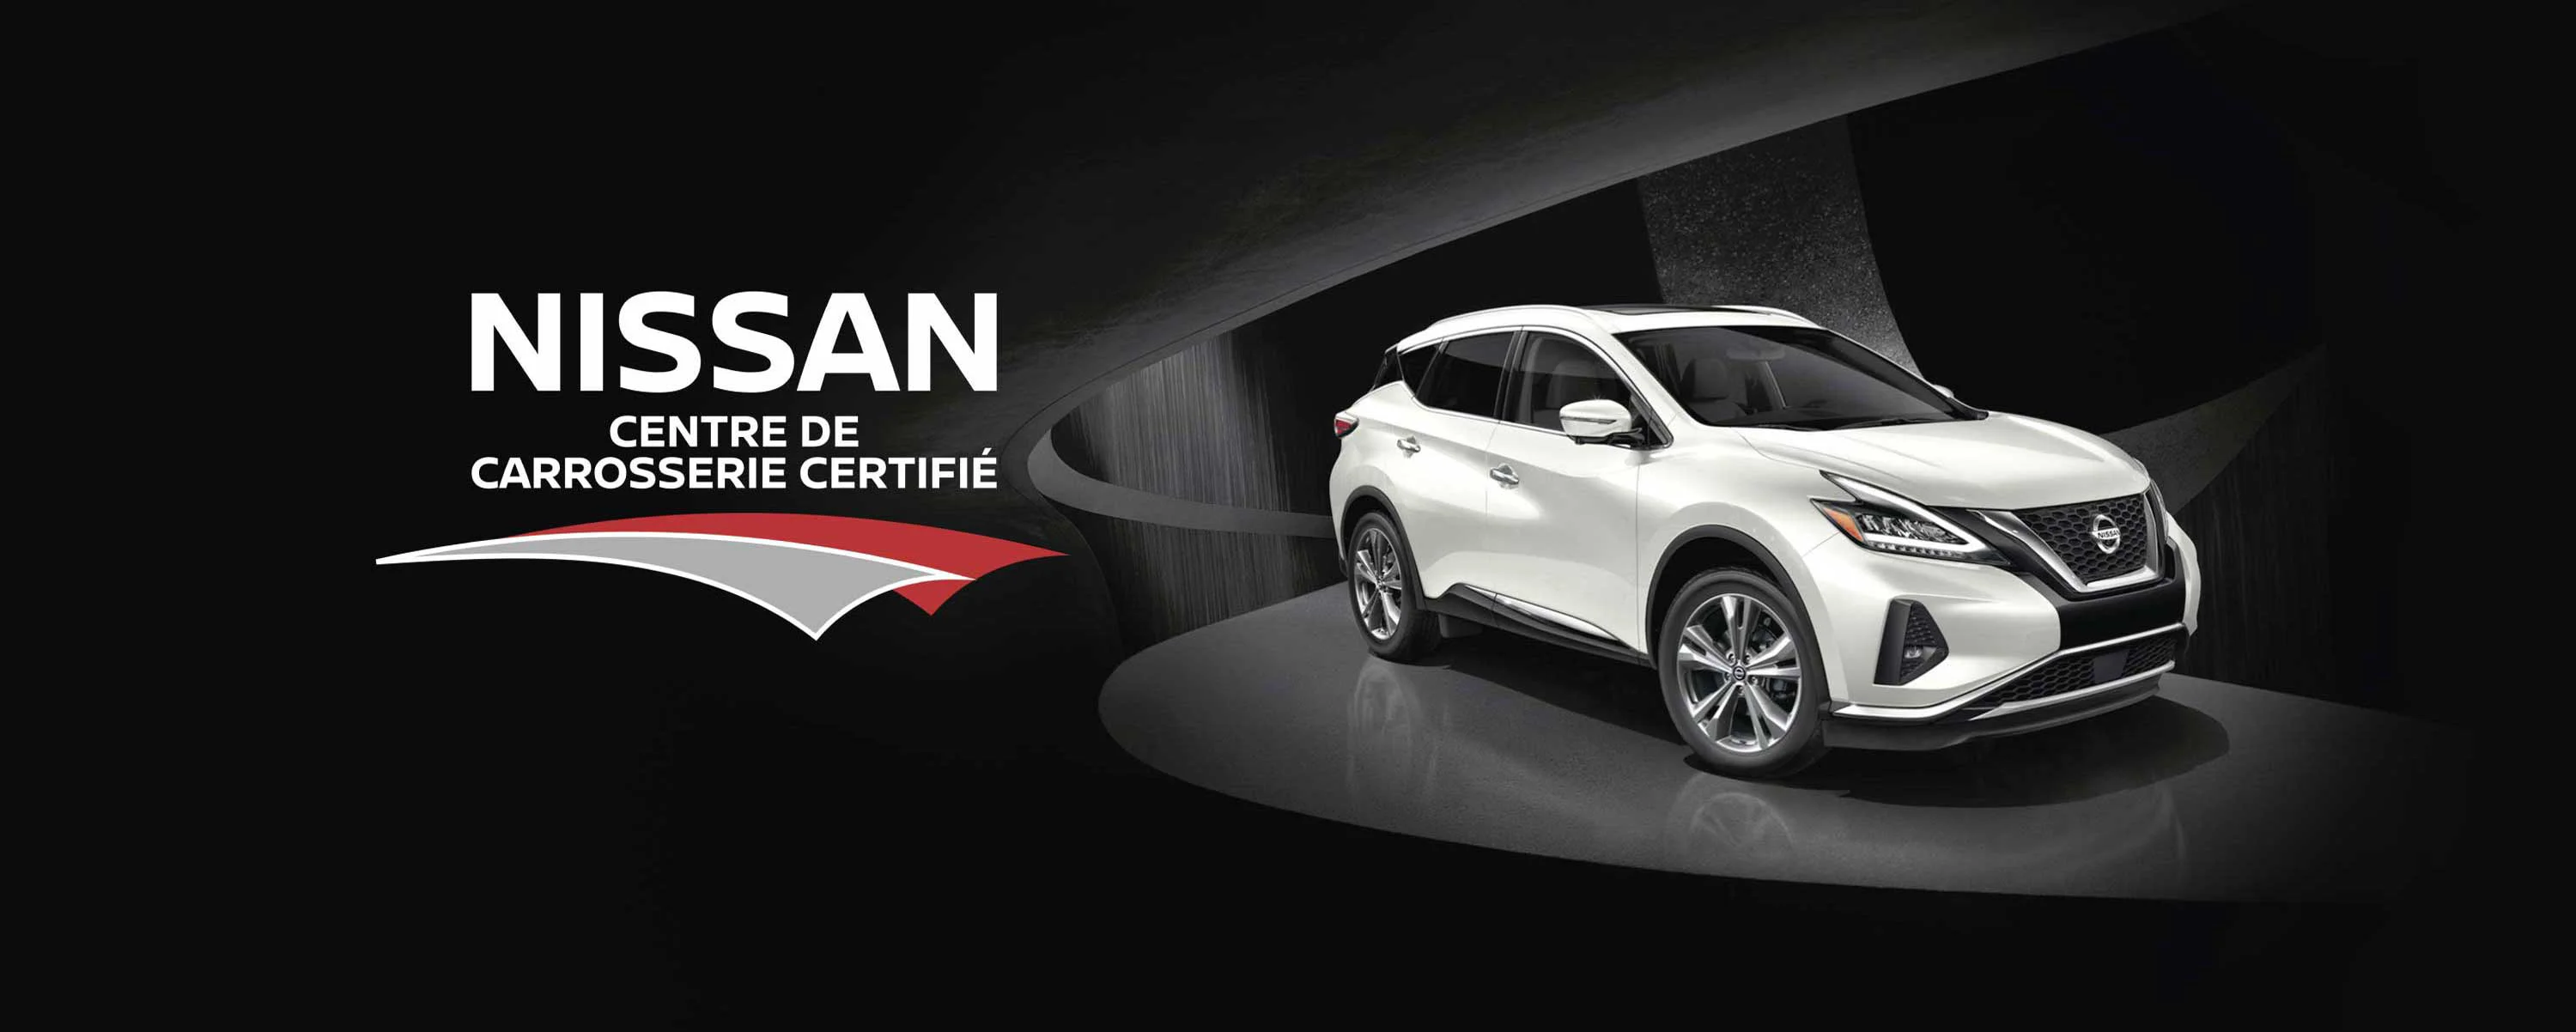 Réseau de réparation de carrosserie certifié - Centres de carrosserie Nissan Canada